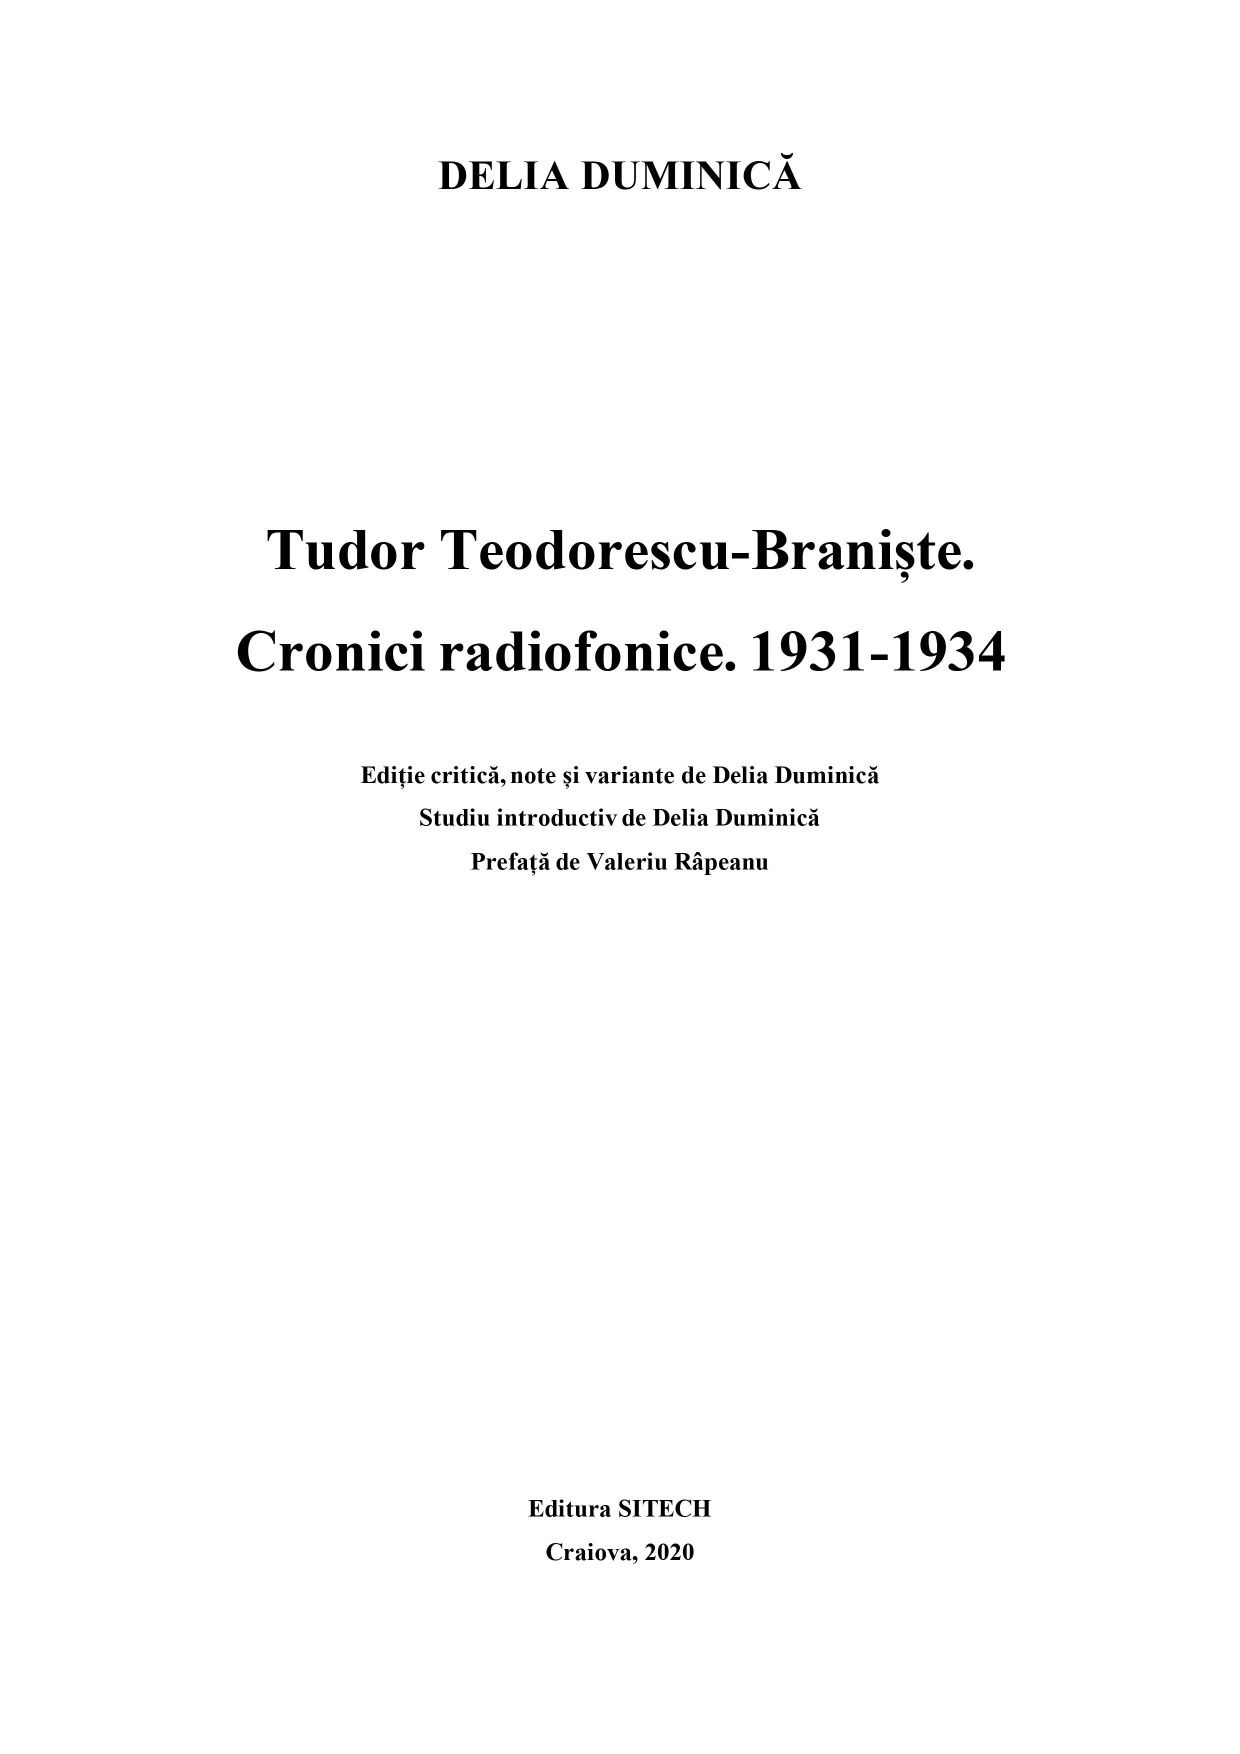 Tudor Teodorescu-Braniște - Cronici radiofonice 1931-1934